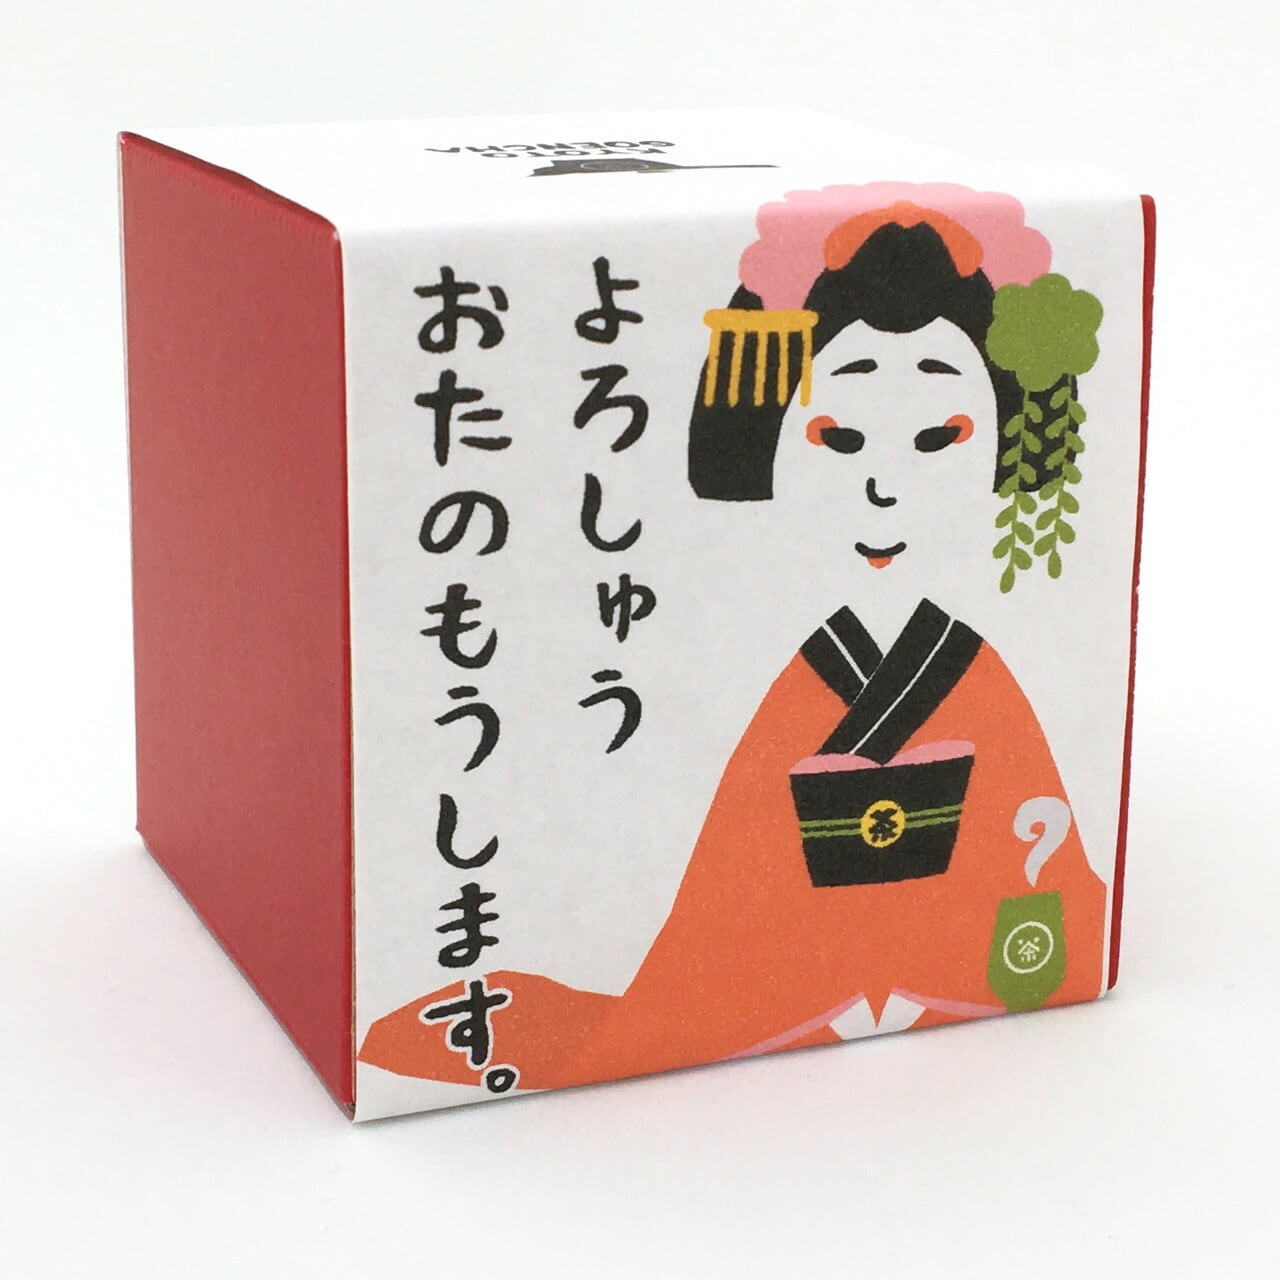 舞妓はん 箱茶 よろしゅうおたのもうします 京都ぎょくろのごえん茶 おいしいたのしいお茶ギフトをお届けいたします